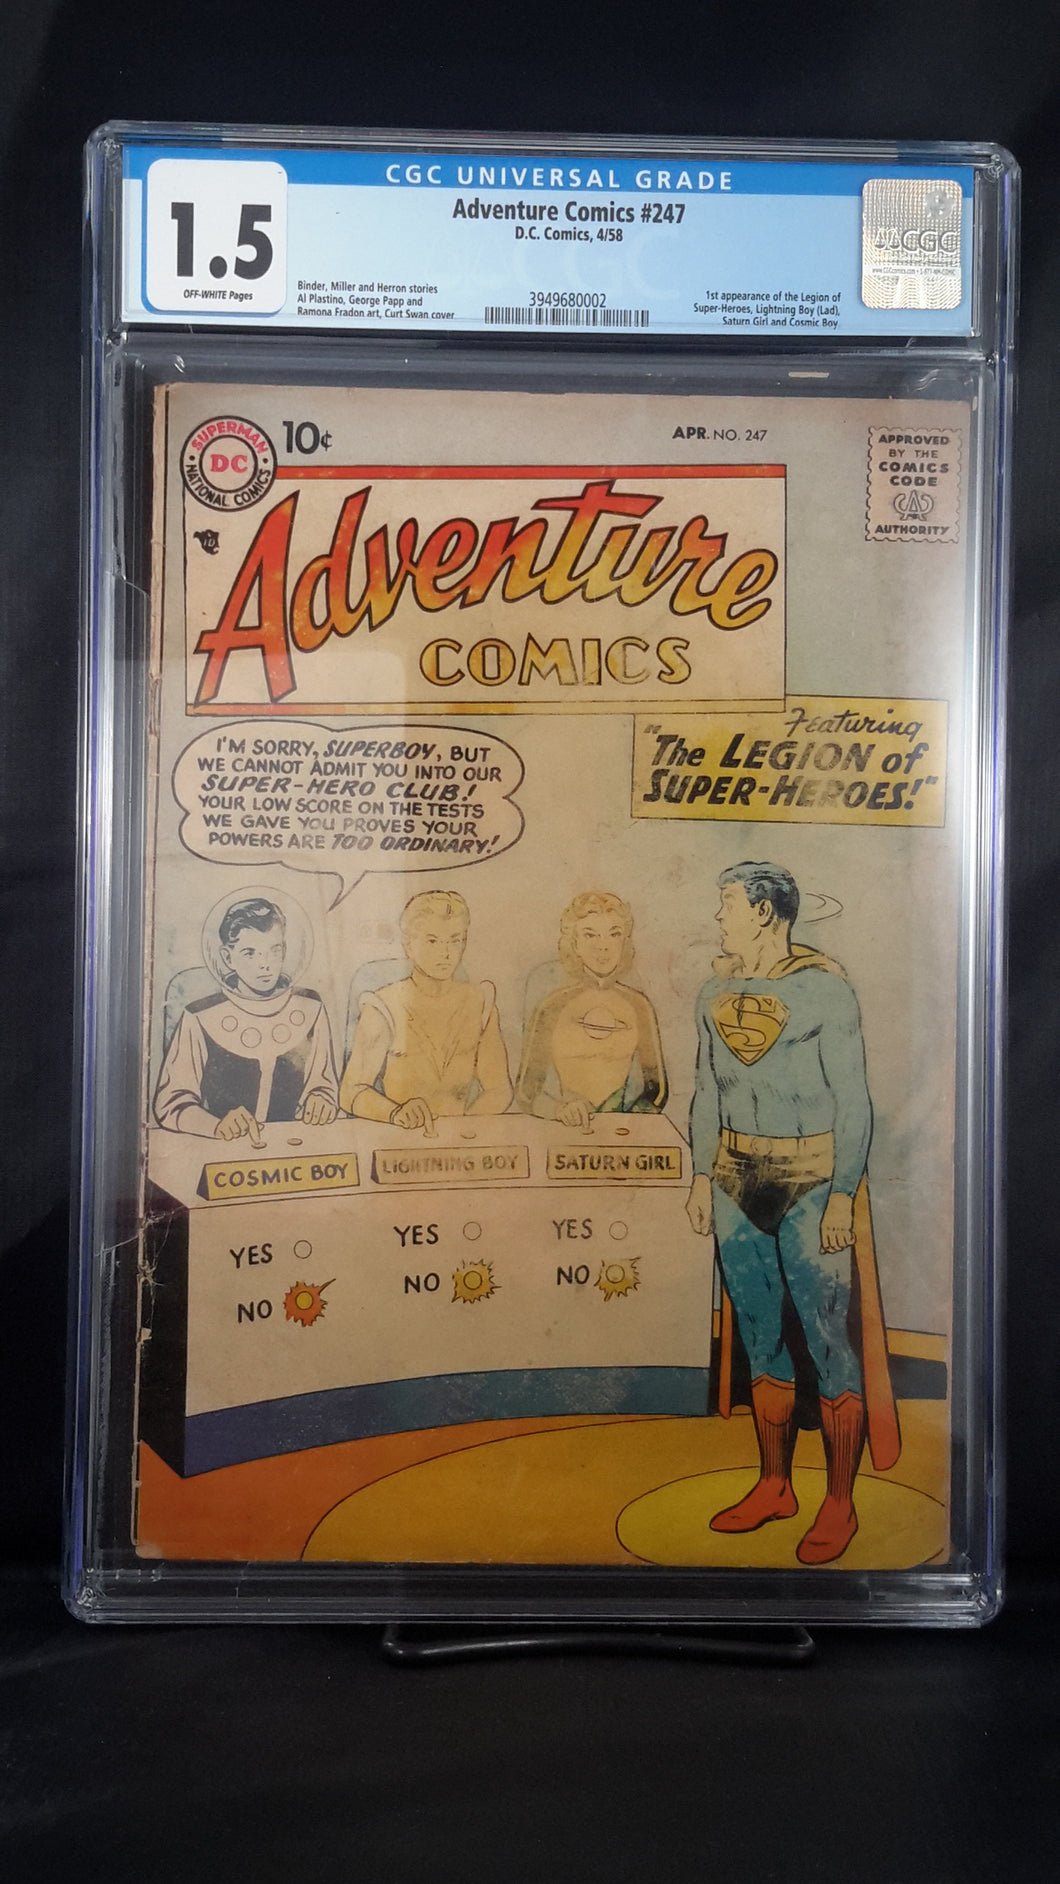 ADVENTURE COMICS (1935) #247 CGC 1.5